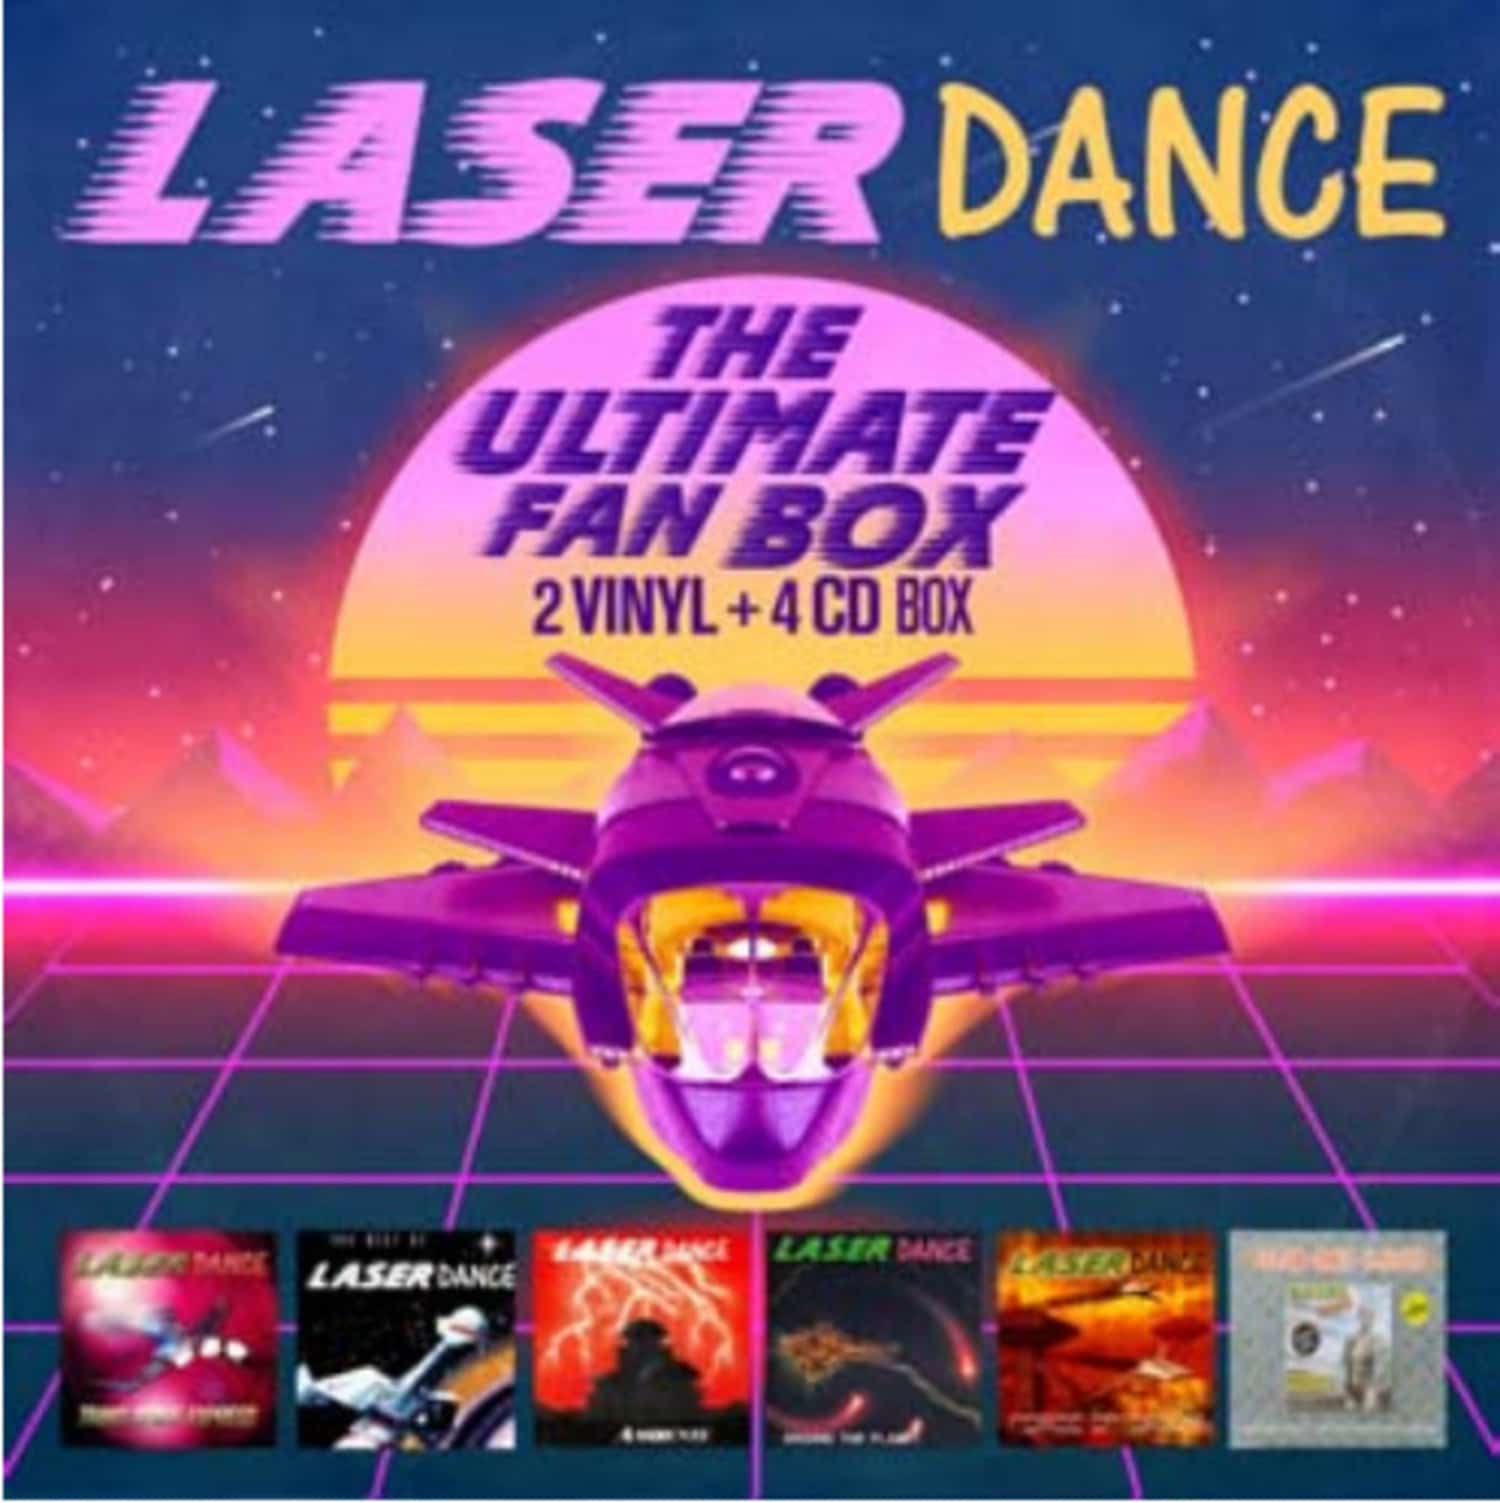 Laserdance - THE ULTIMATE FAN BOX 